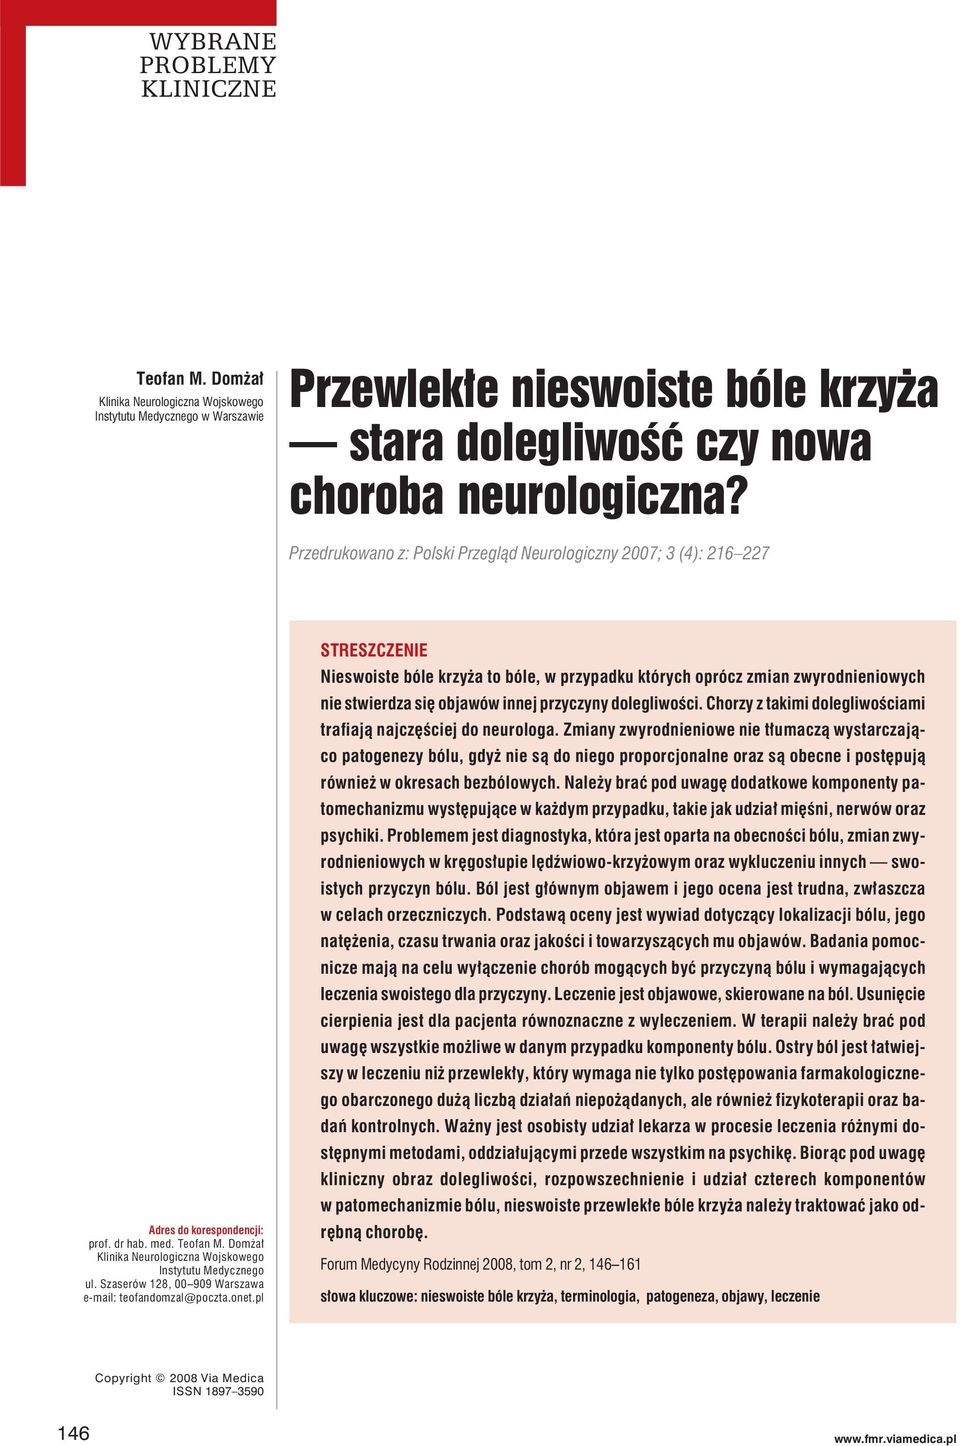 Domżał Klinika Neurologiczna Wojskowego Instytutu Medycznego ul. Szaserów 128, 00 909 Warszawa e-mail: teofandomzal@poczta.onet.